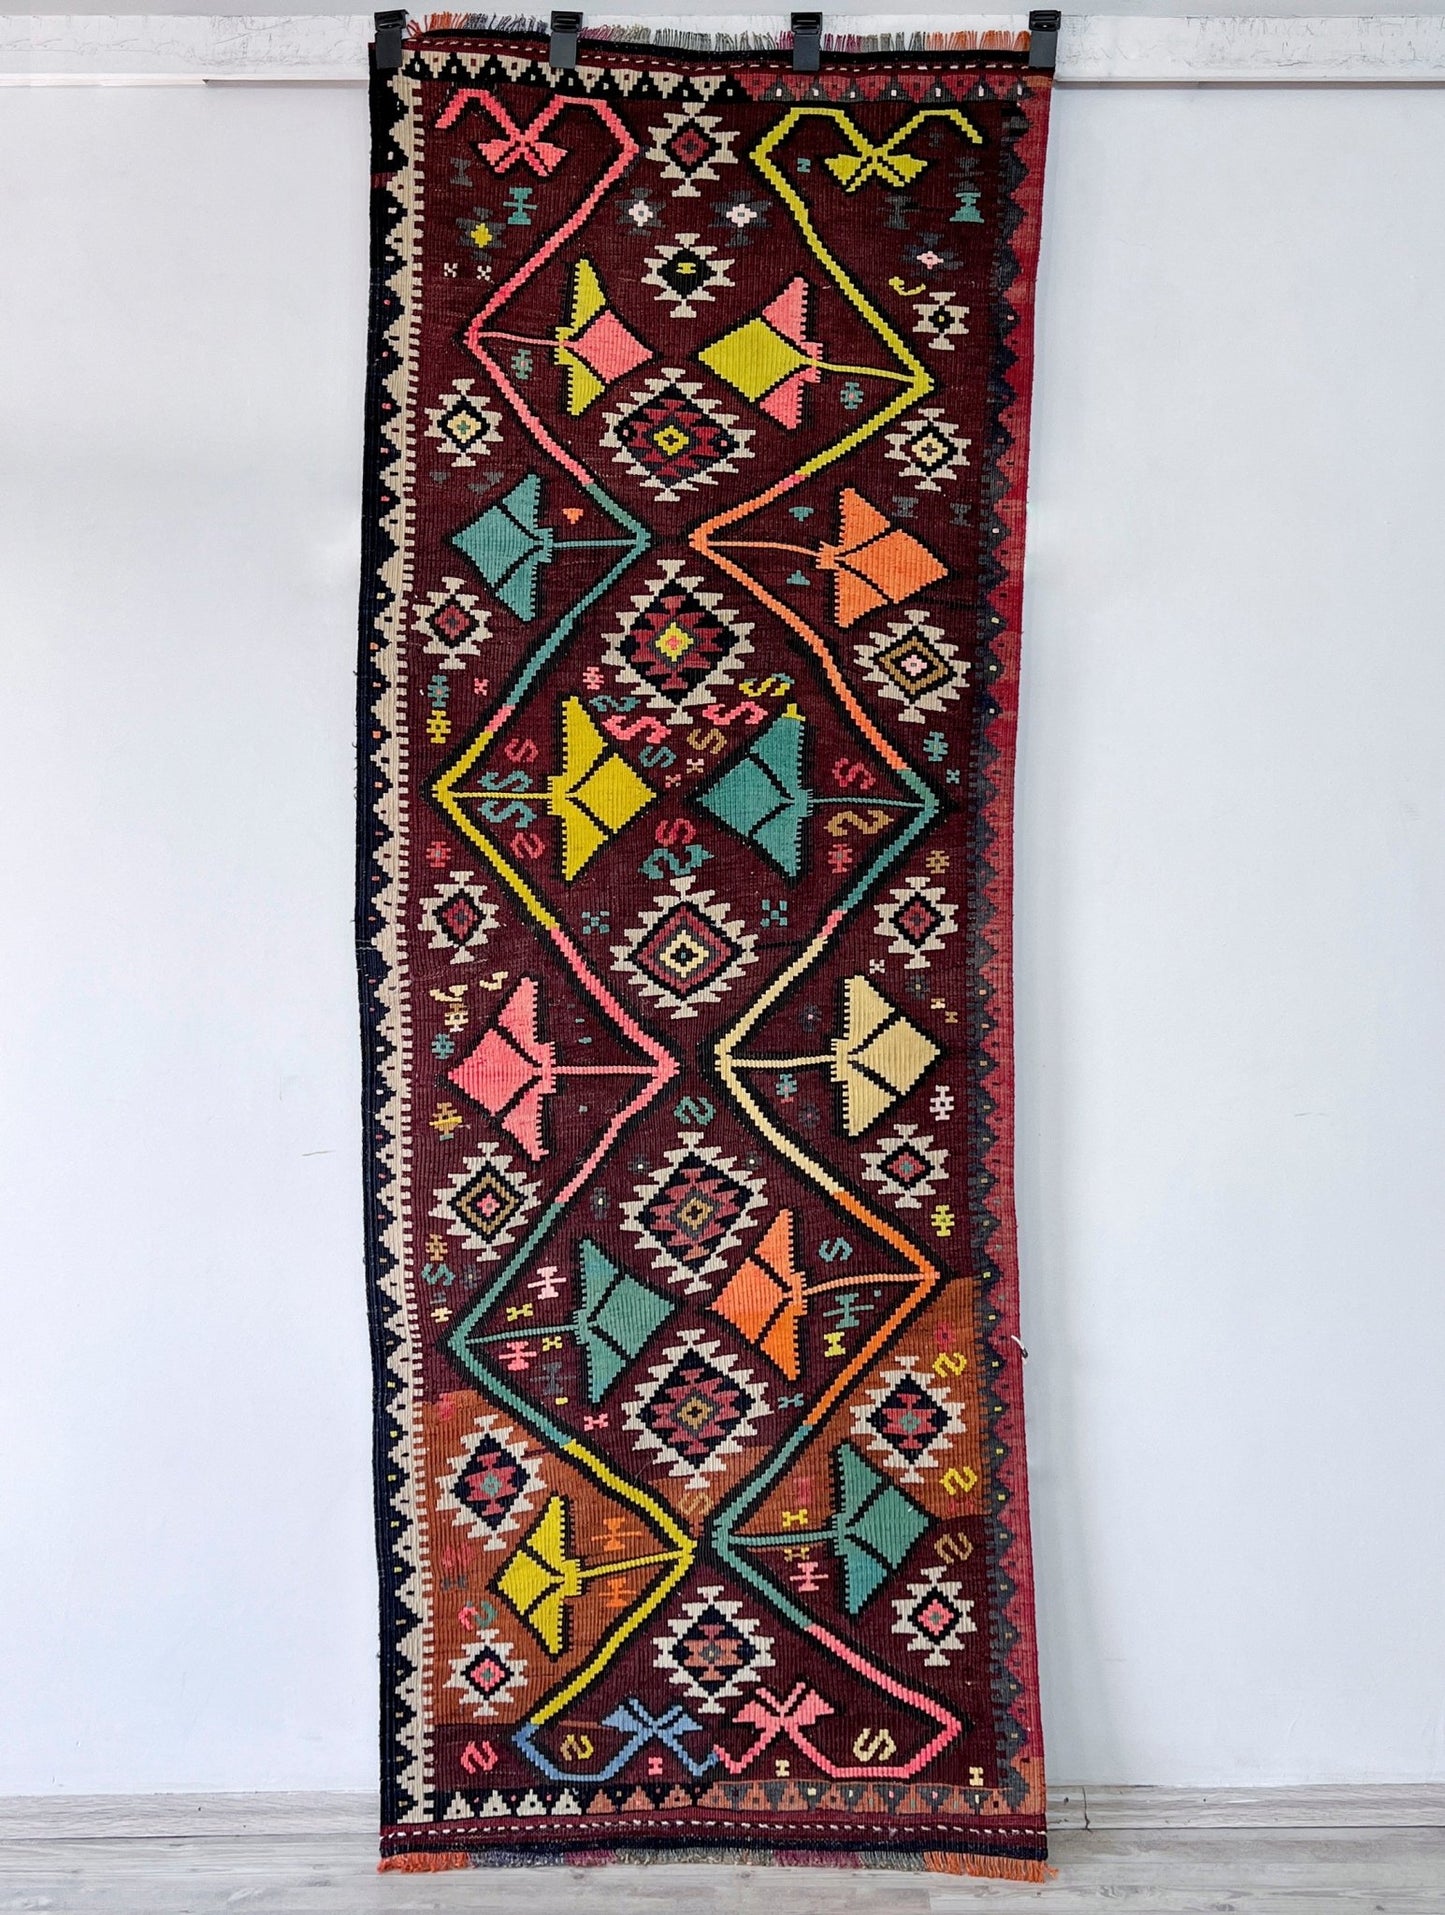 oriental runner rug san francisco bay area vintage rug shop berkeley palo alto buy rug online california